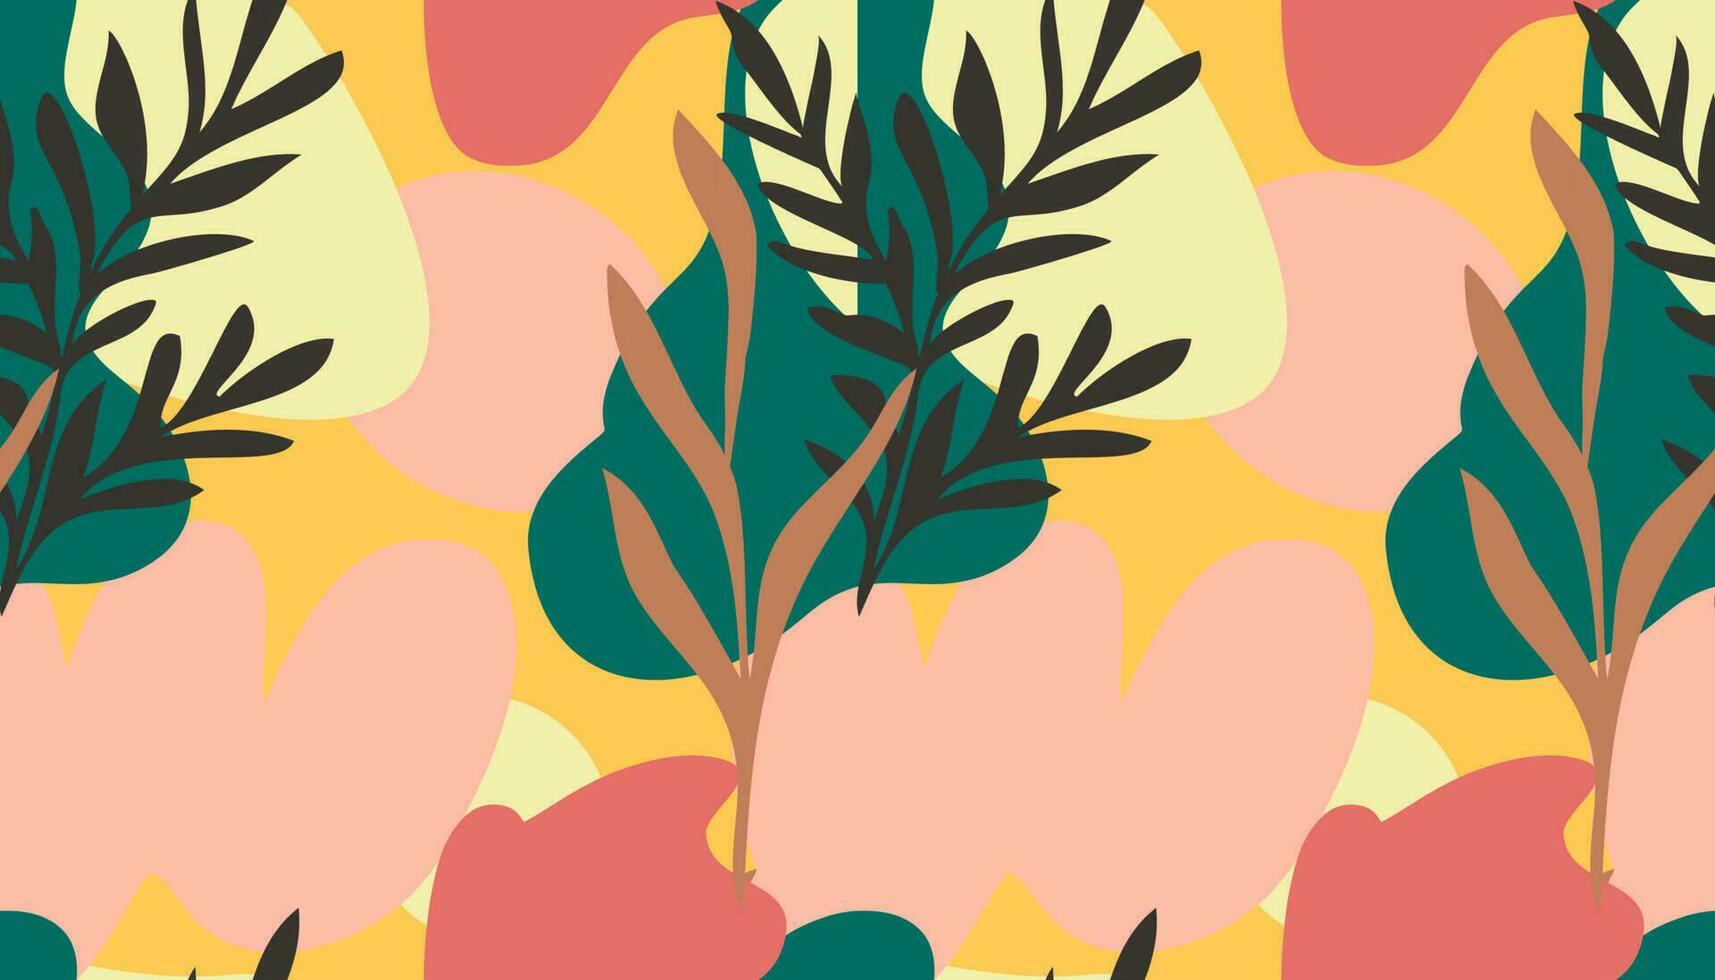 nahtlos Muster von Hand gezeichnet verschiedene Formen Gekritzel Objekte, Linien und Pflanze Blatt Laub Hintergrund bunt Blumen- Hintergrund zum Muster. abstrakt Vektor Design Illustration